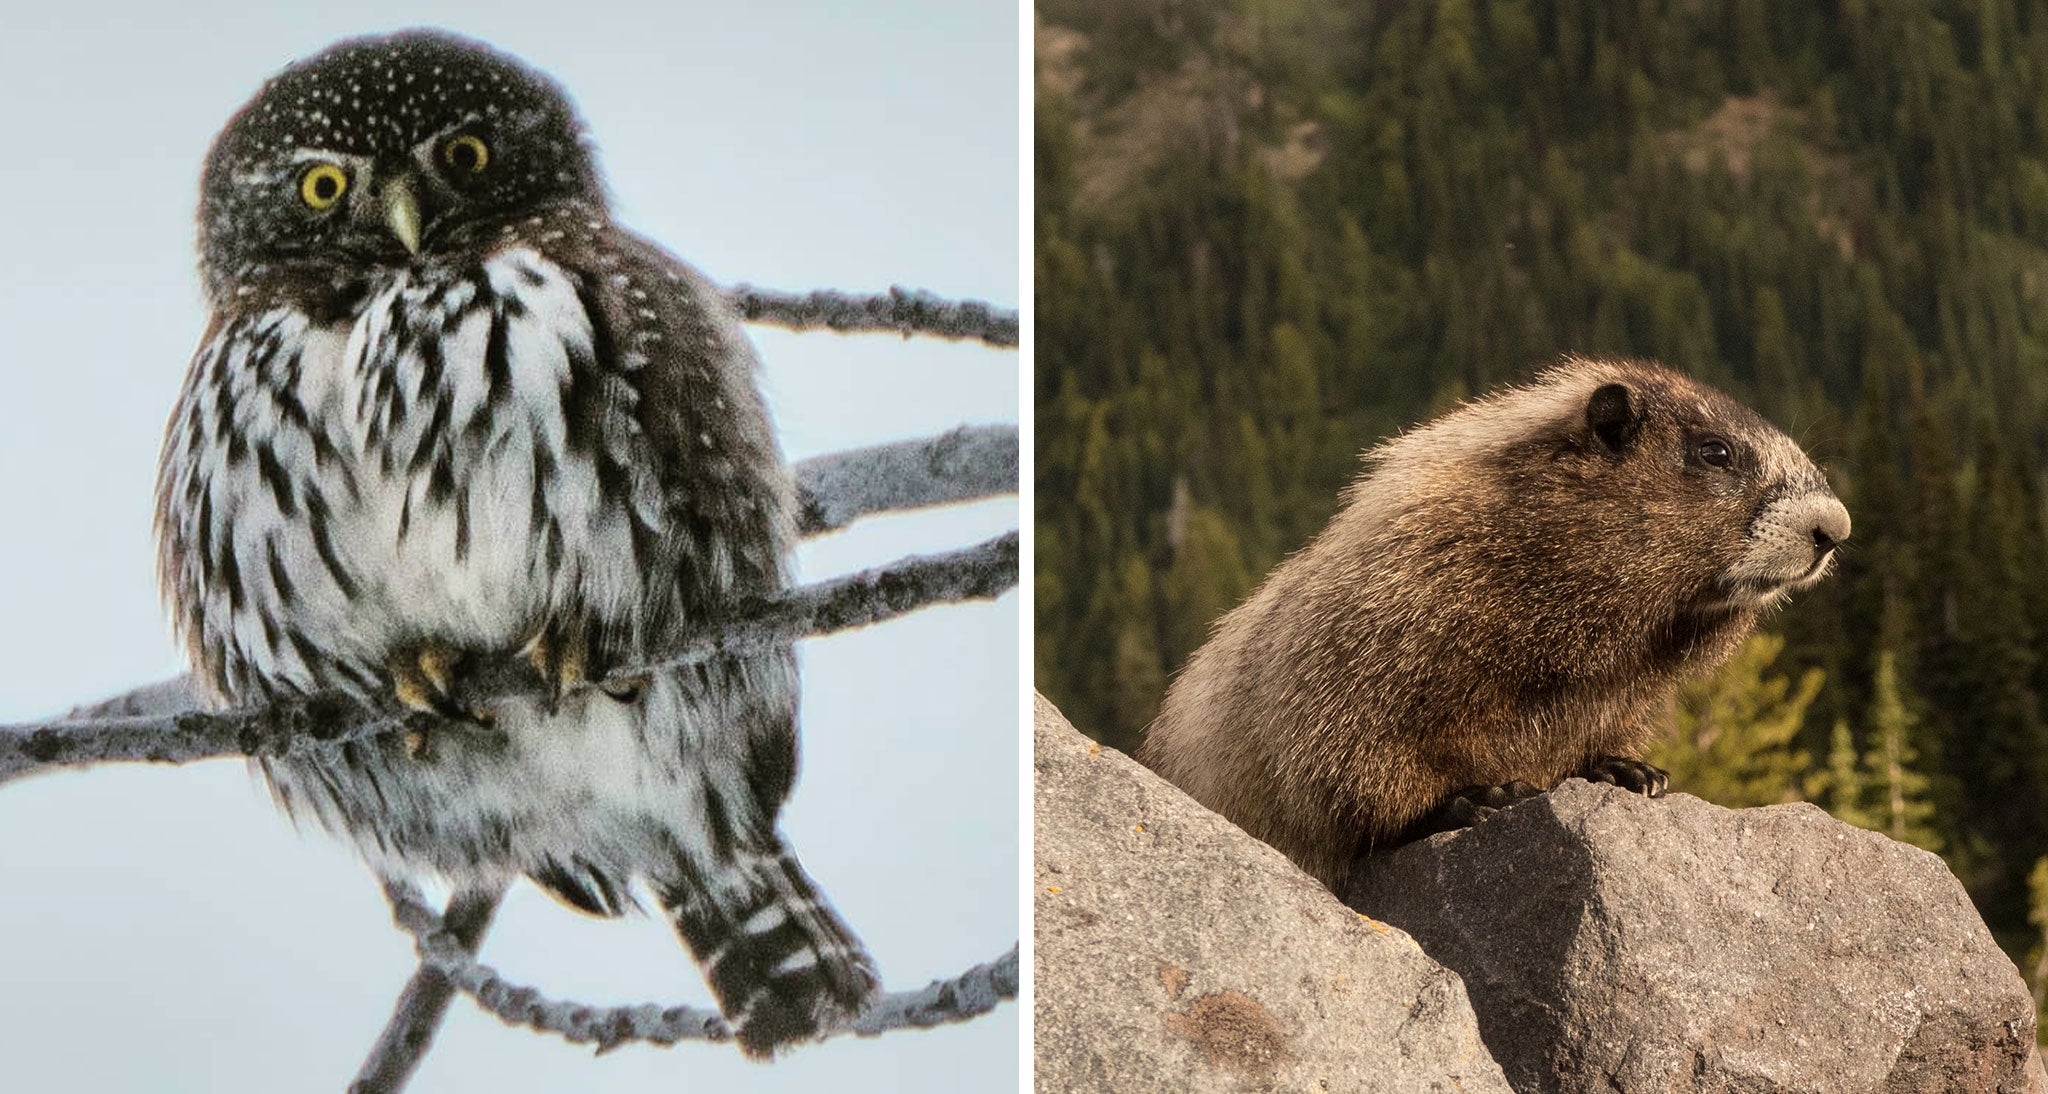 Snowy owl and a marmot